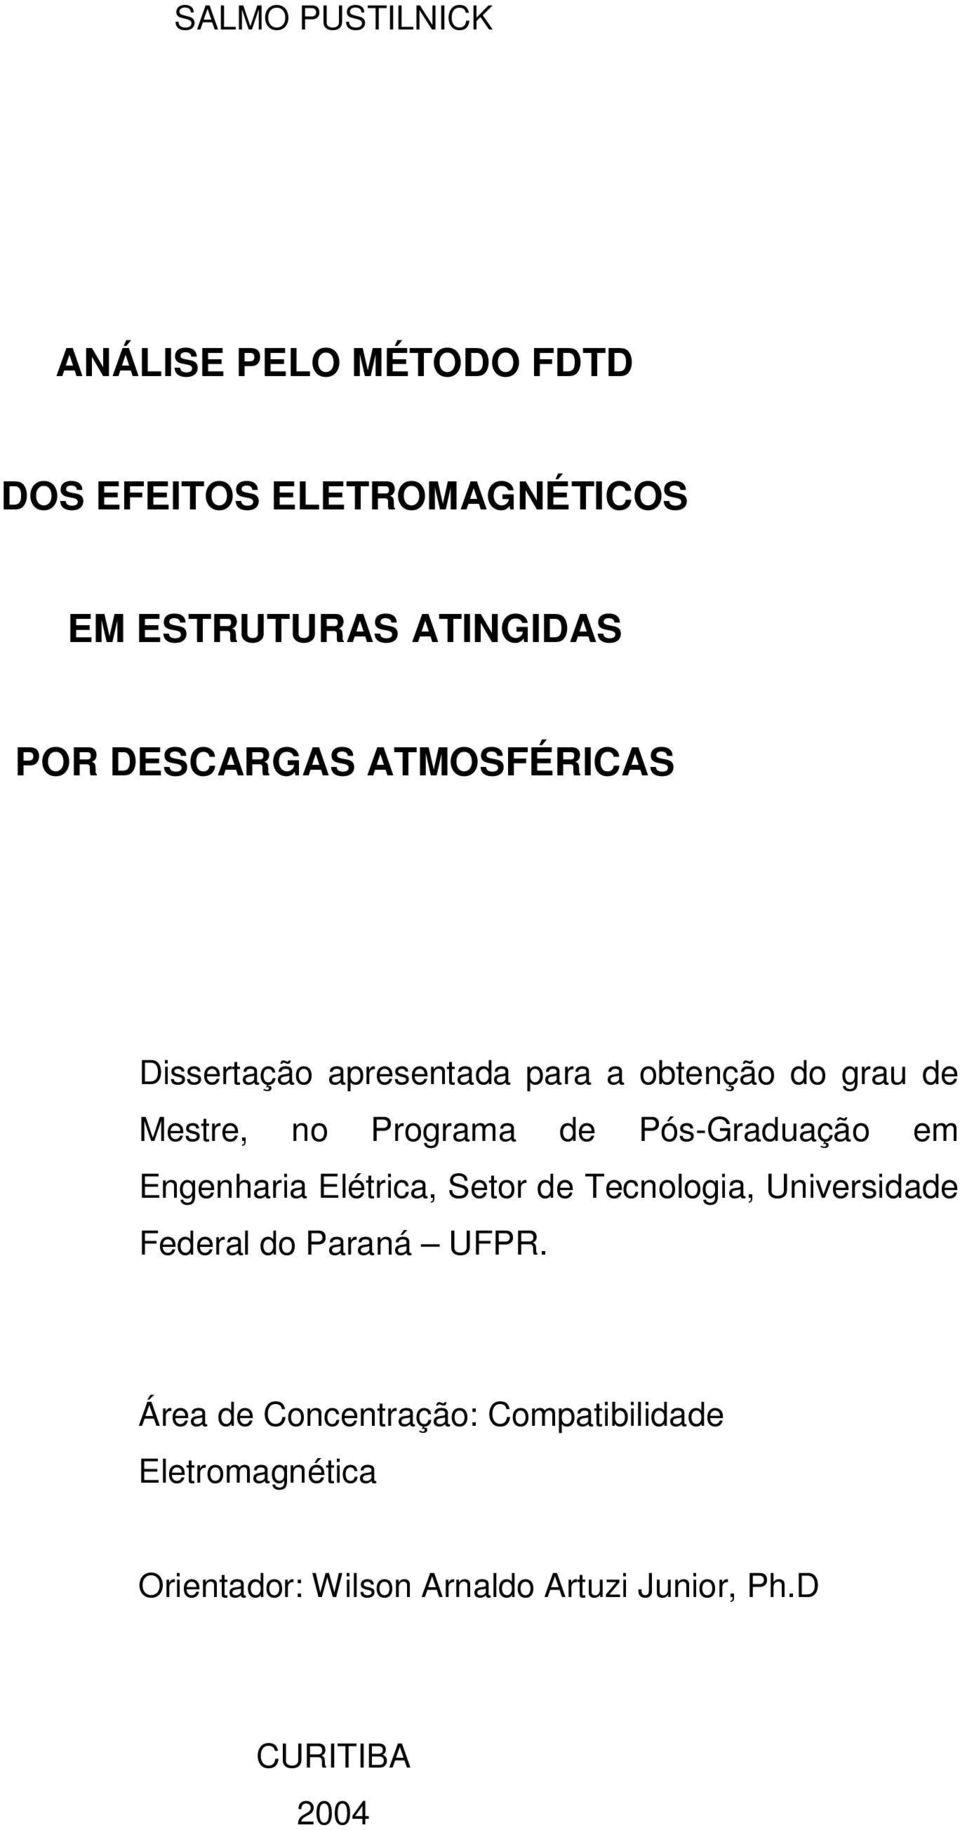 Pós-Graduação em Engenharia Elétrica, Setor de Tecnologia, Universidade Federal do Paraná UFPR.